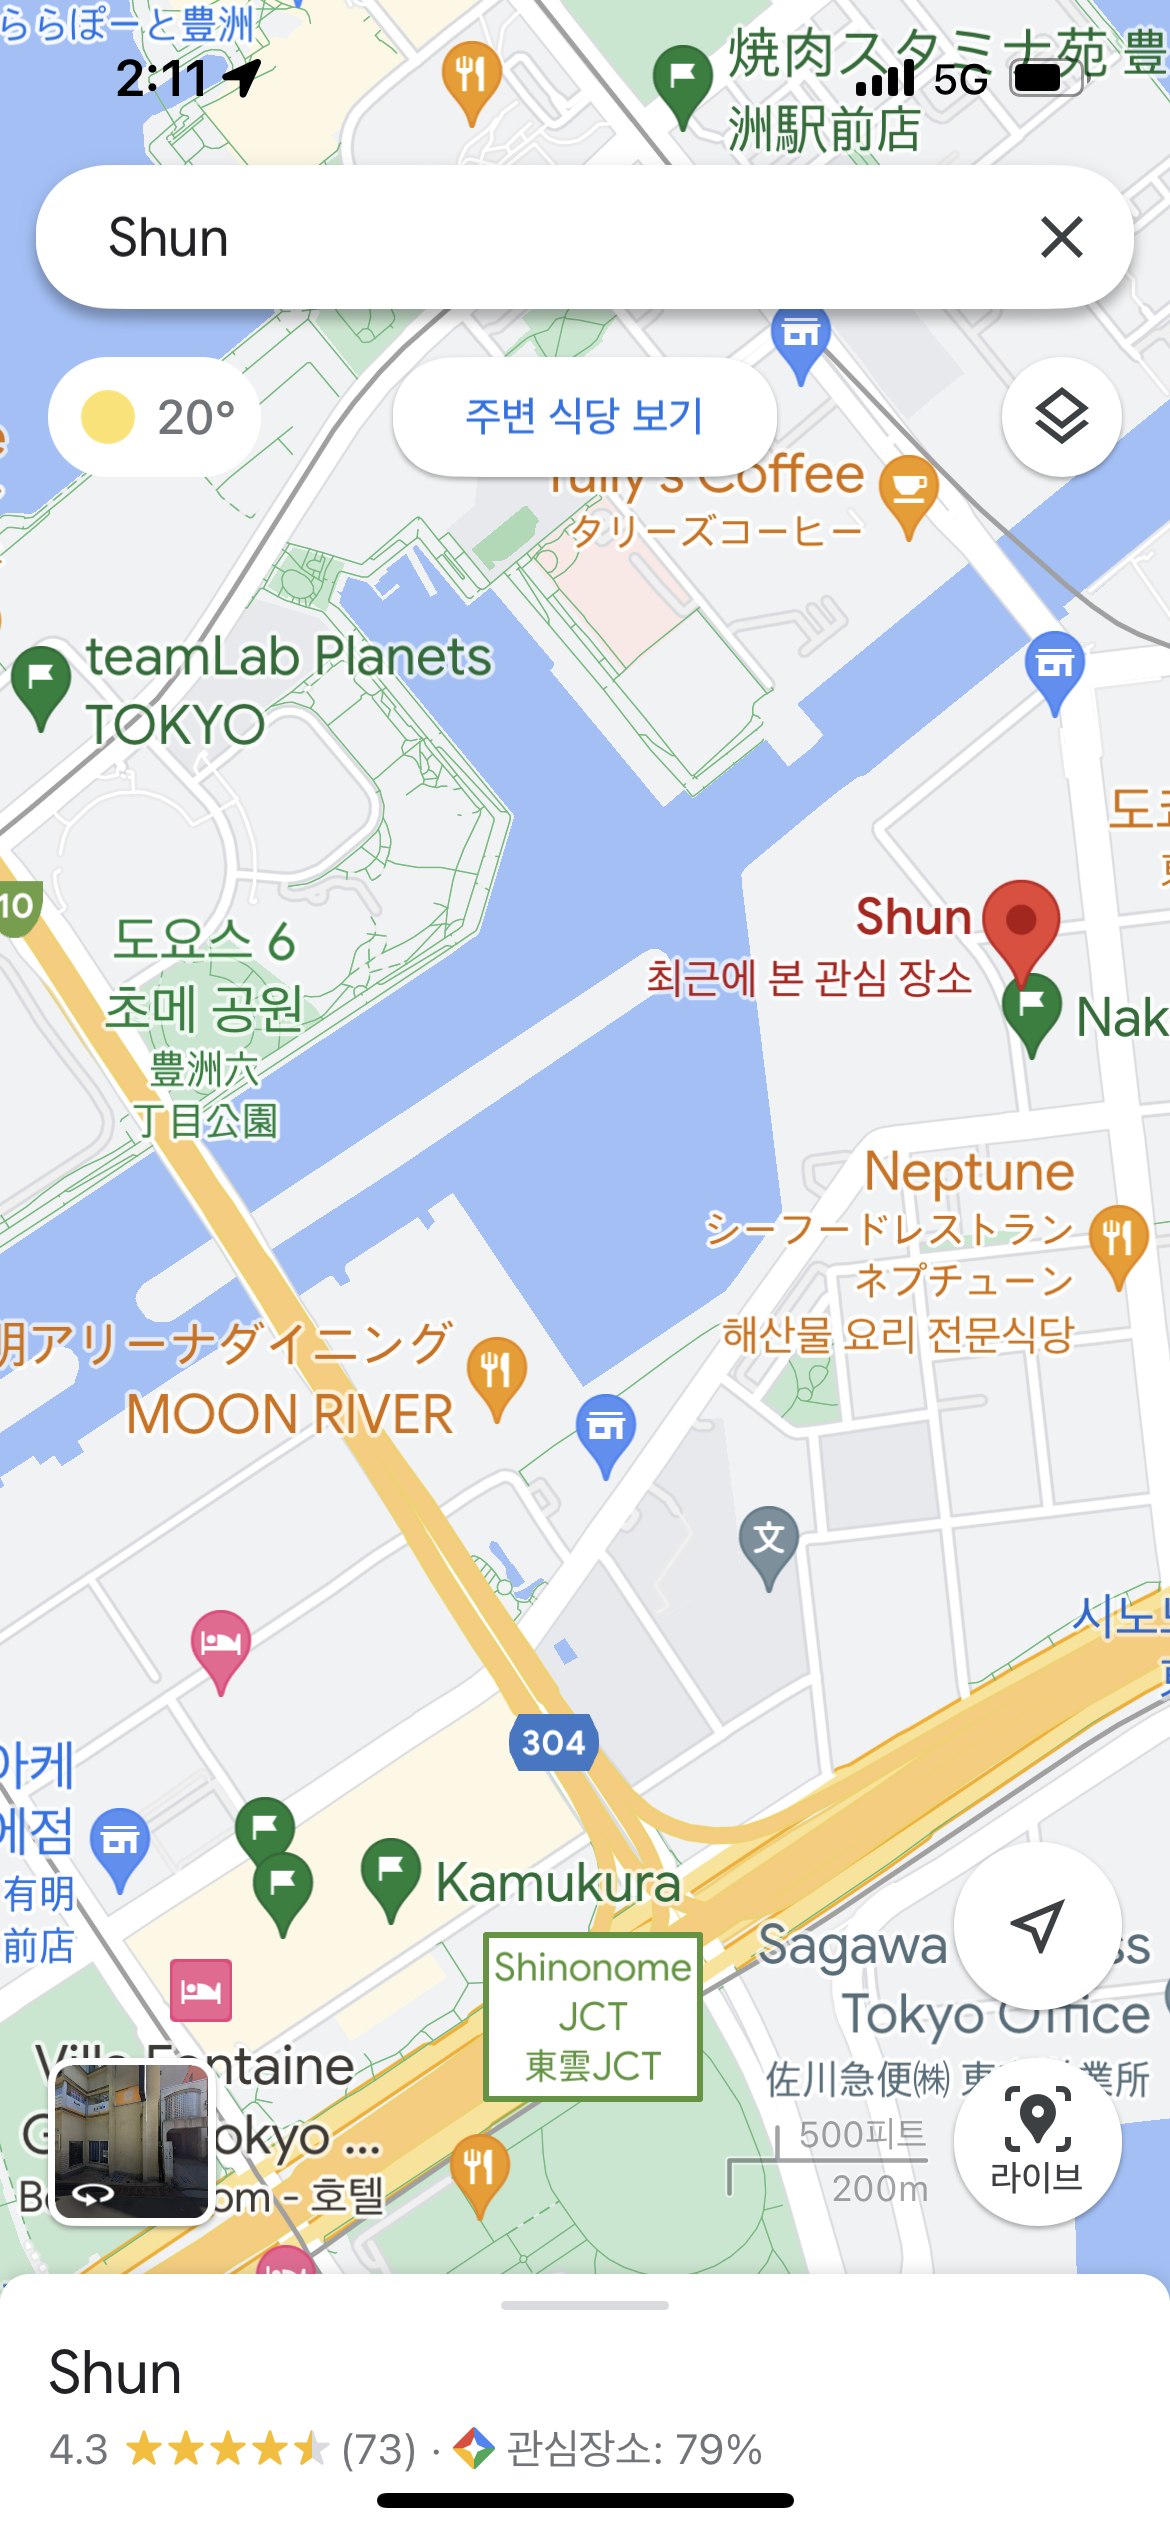 구글 지도에서 Shun 위치